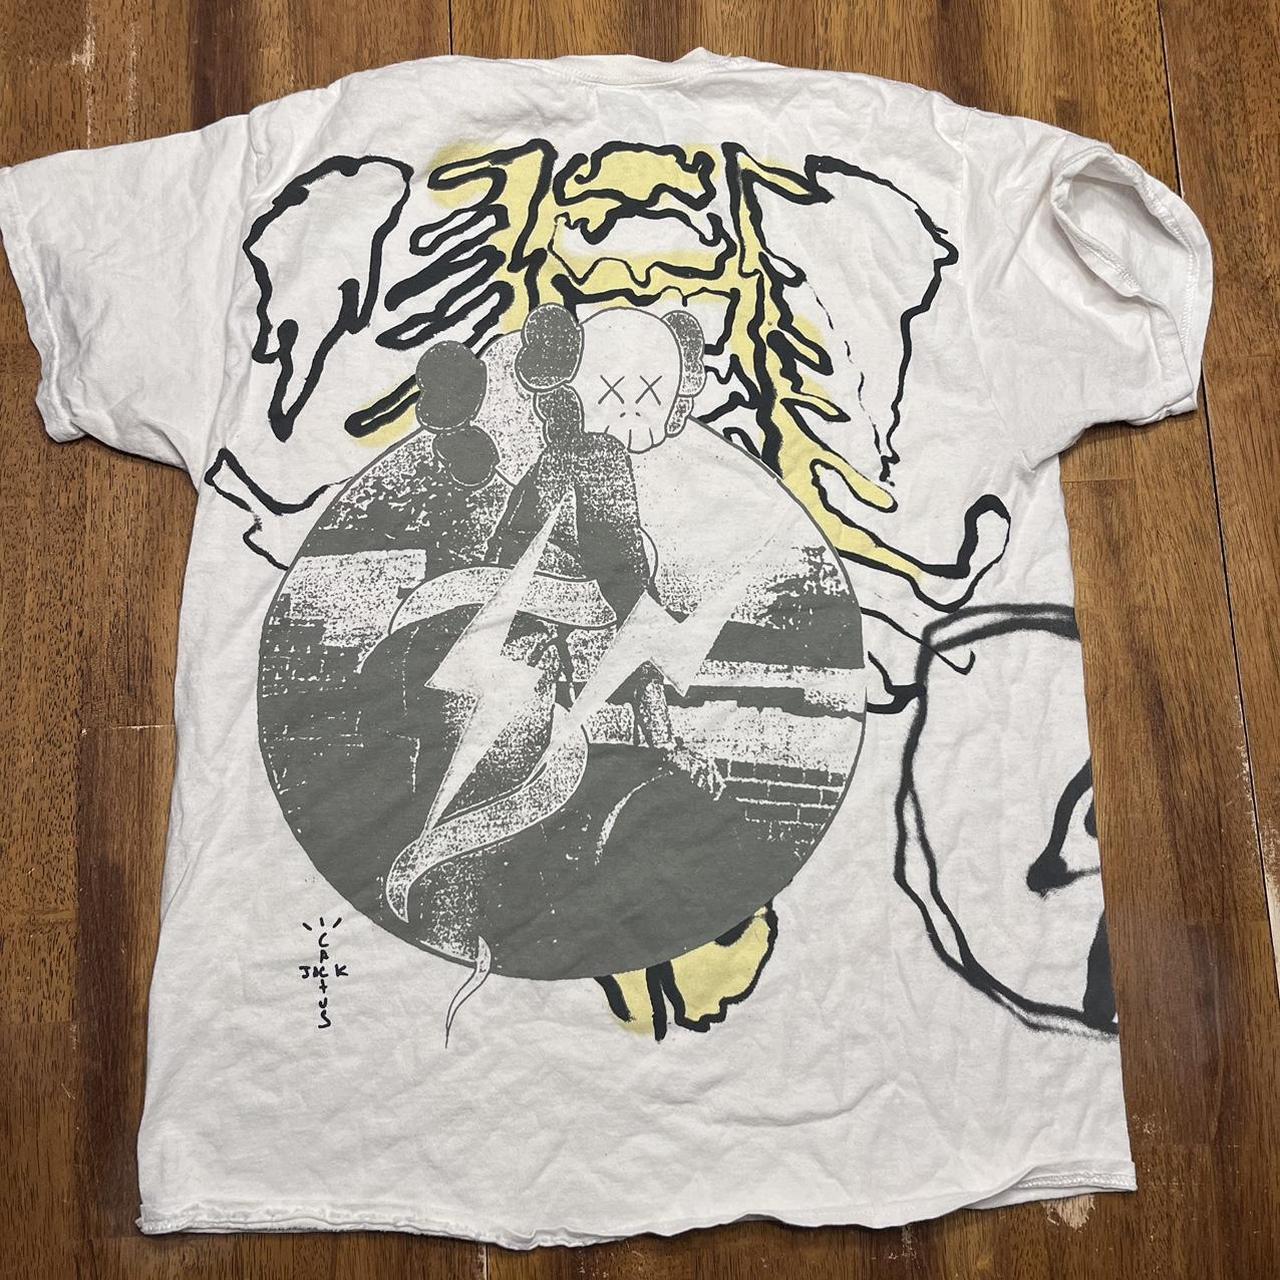 Travis Scott X KAWS T-Shirt Size M $20... - Depop